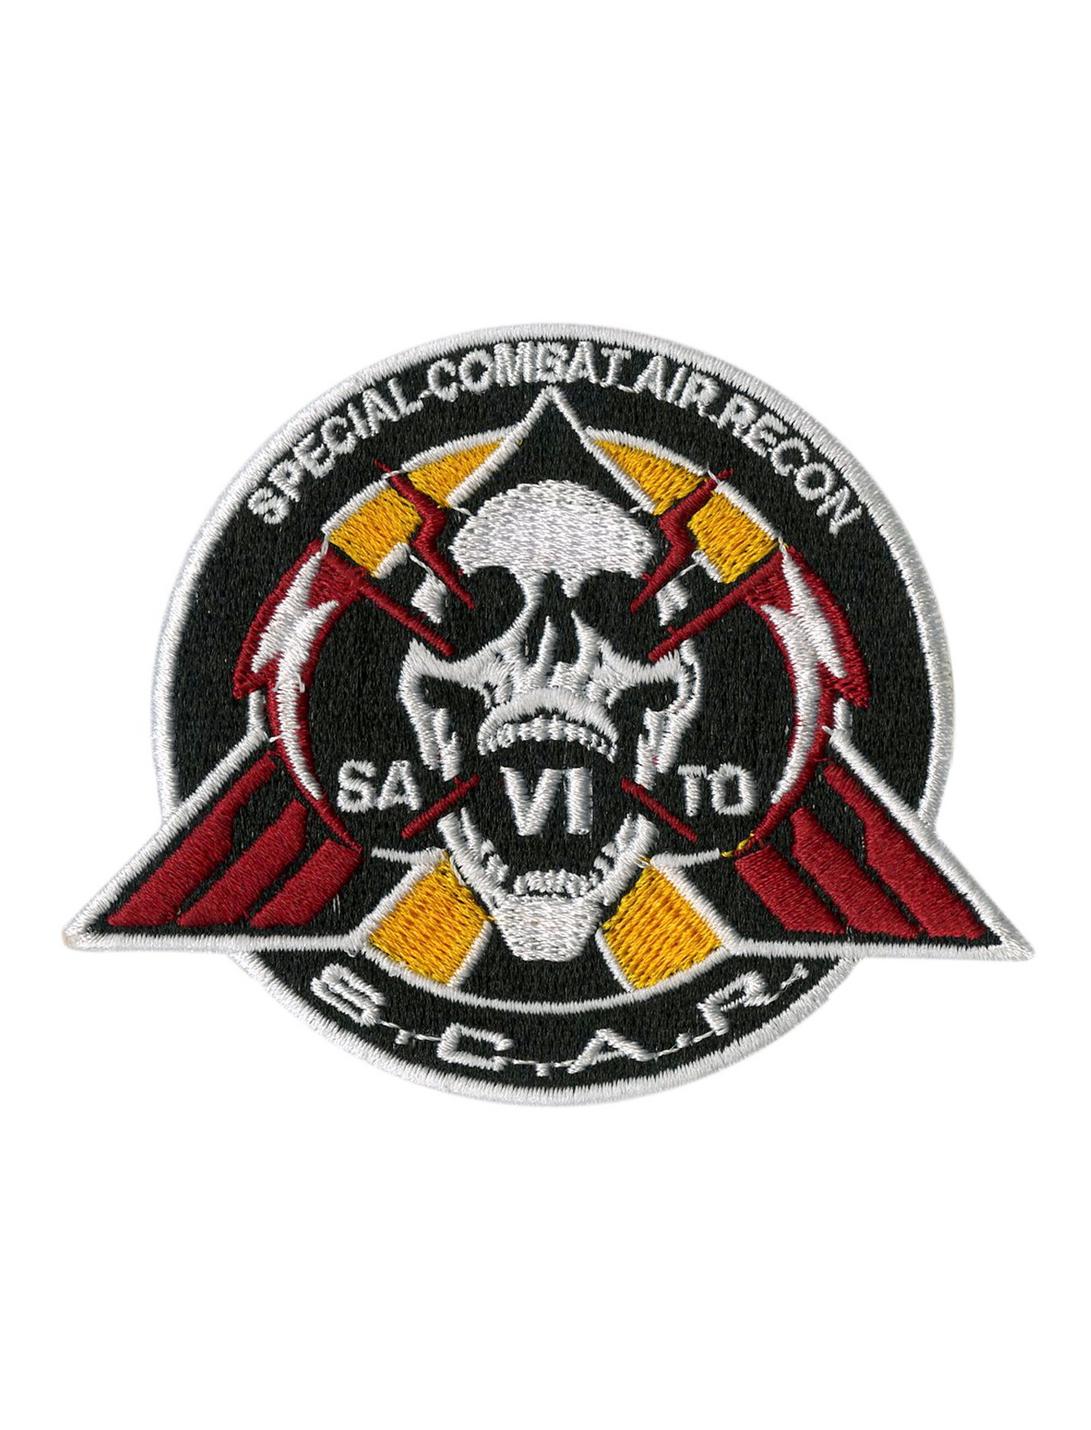 Call Of Duty S.C.A.R. Logo Iron-On Patch, , hi-res